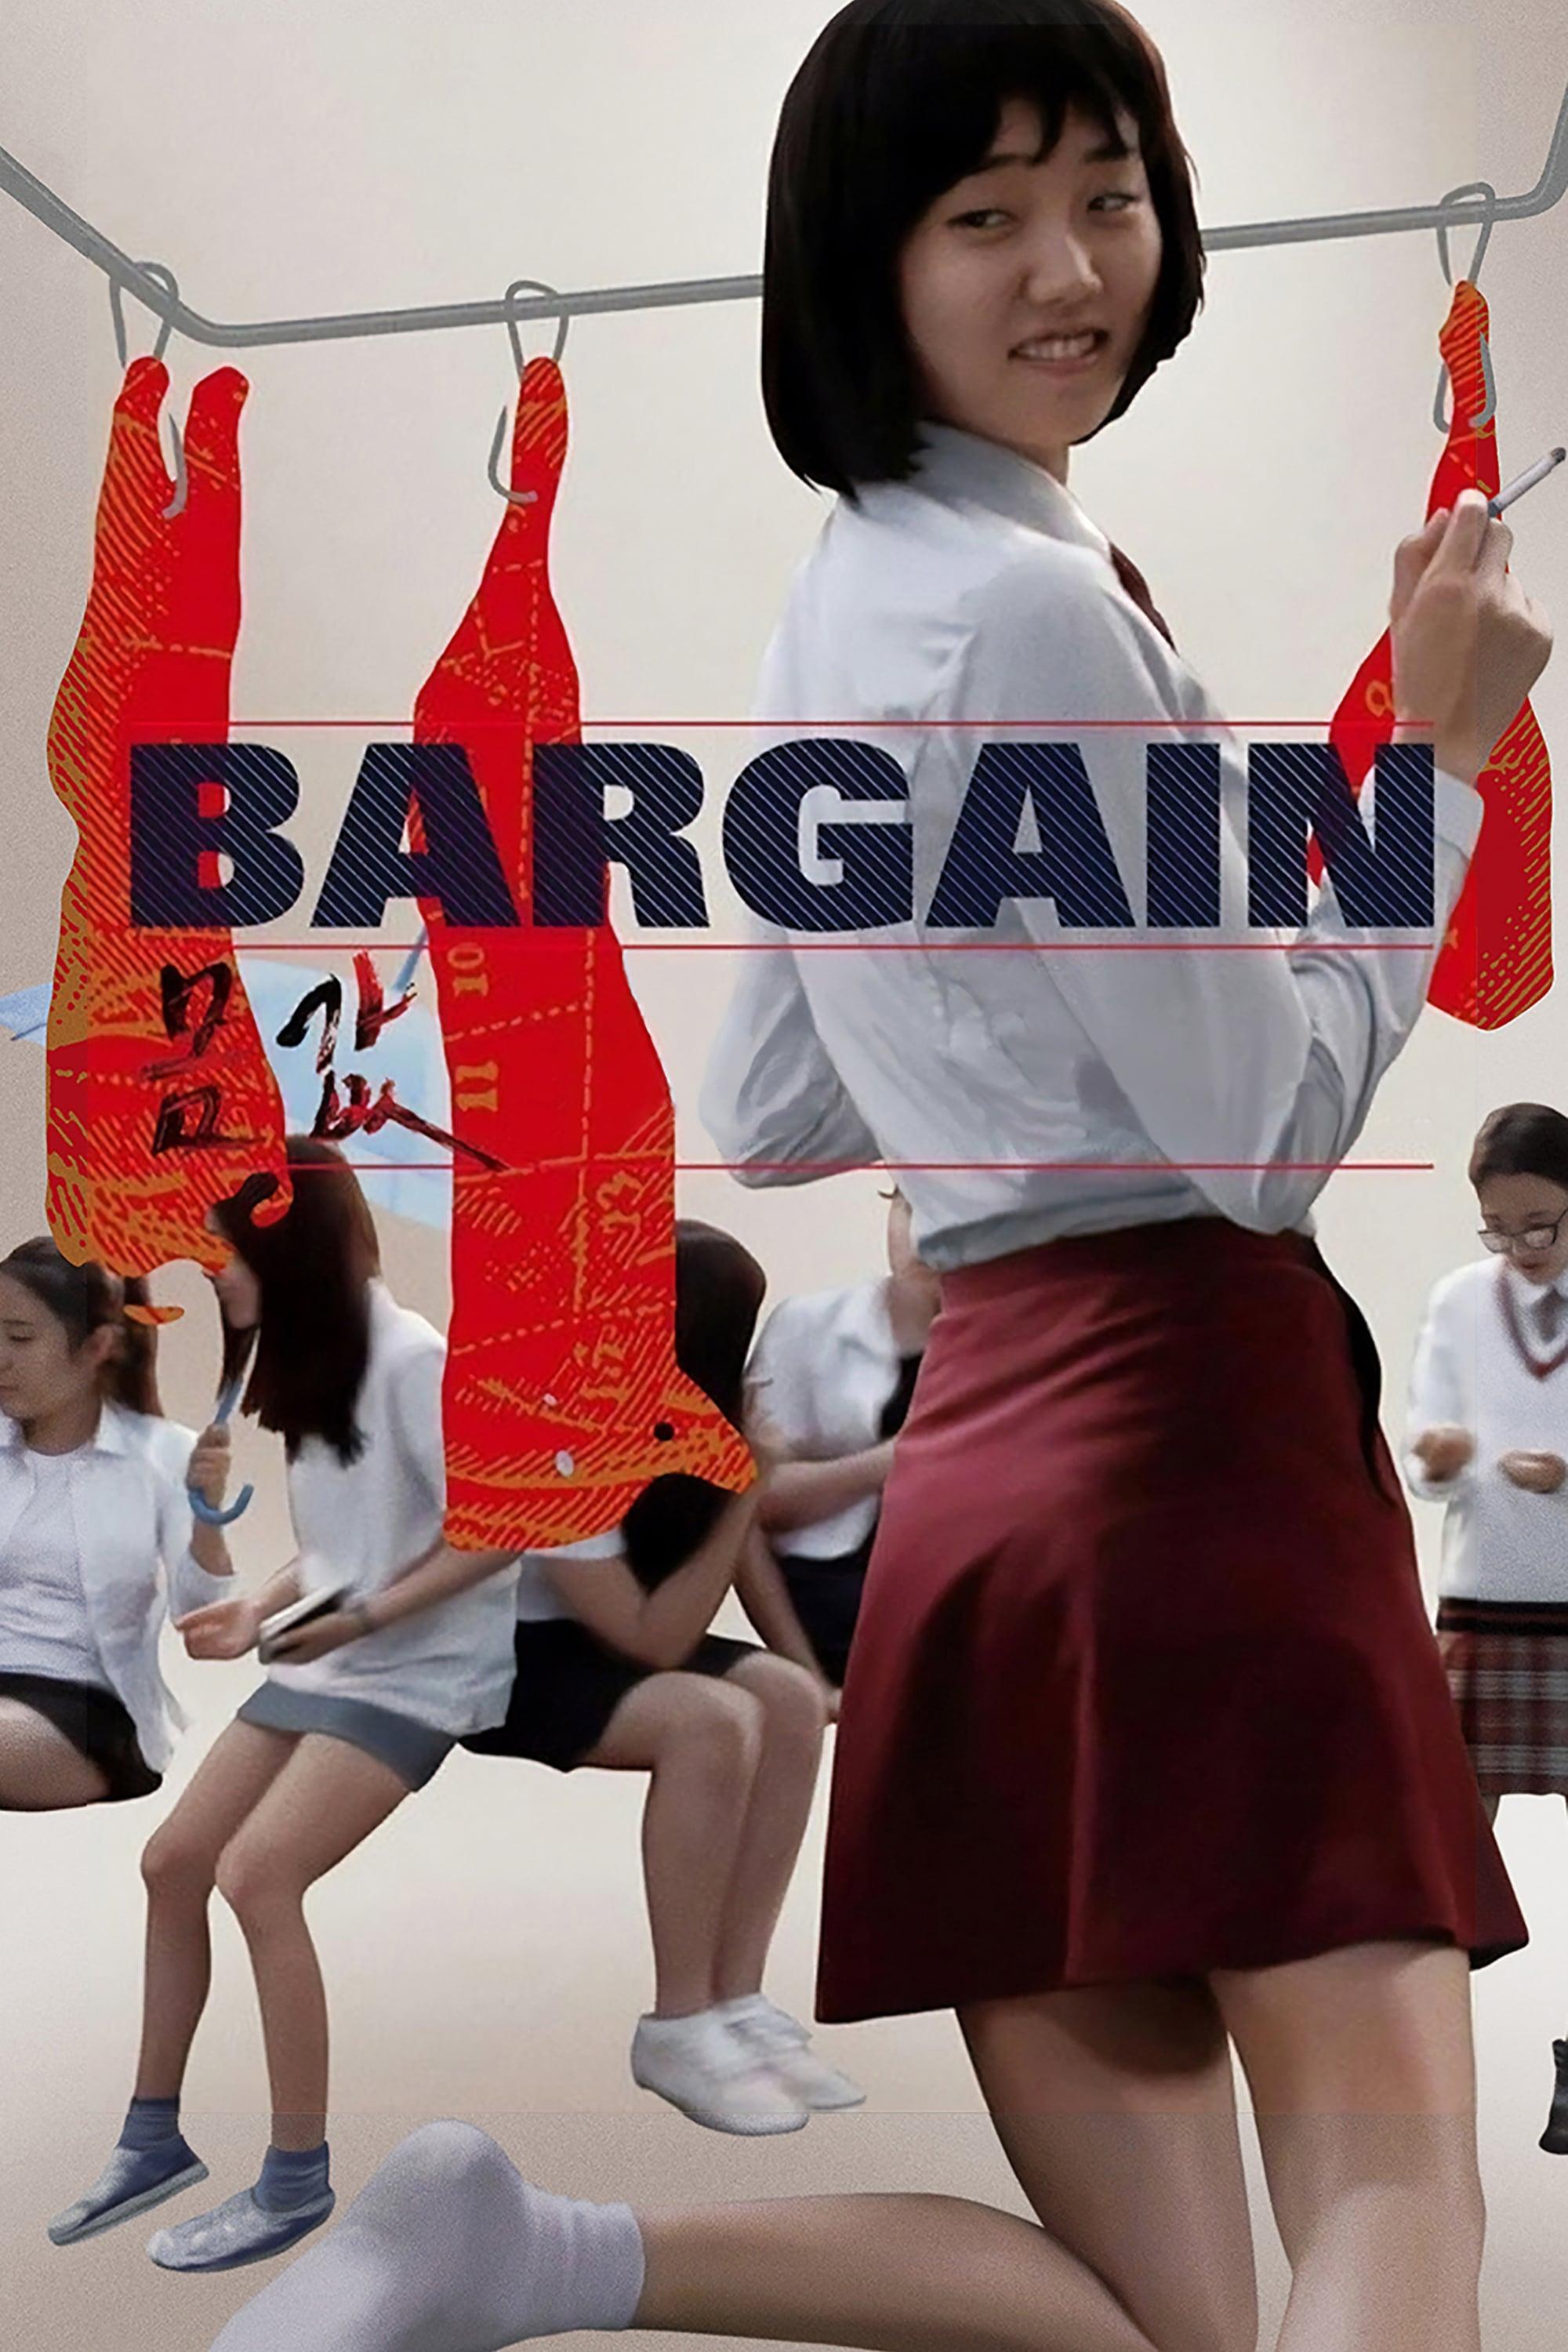 Bargain poster